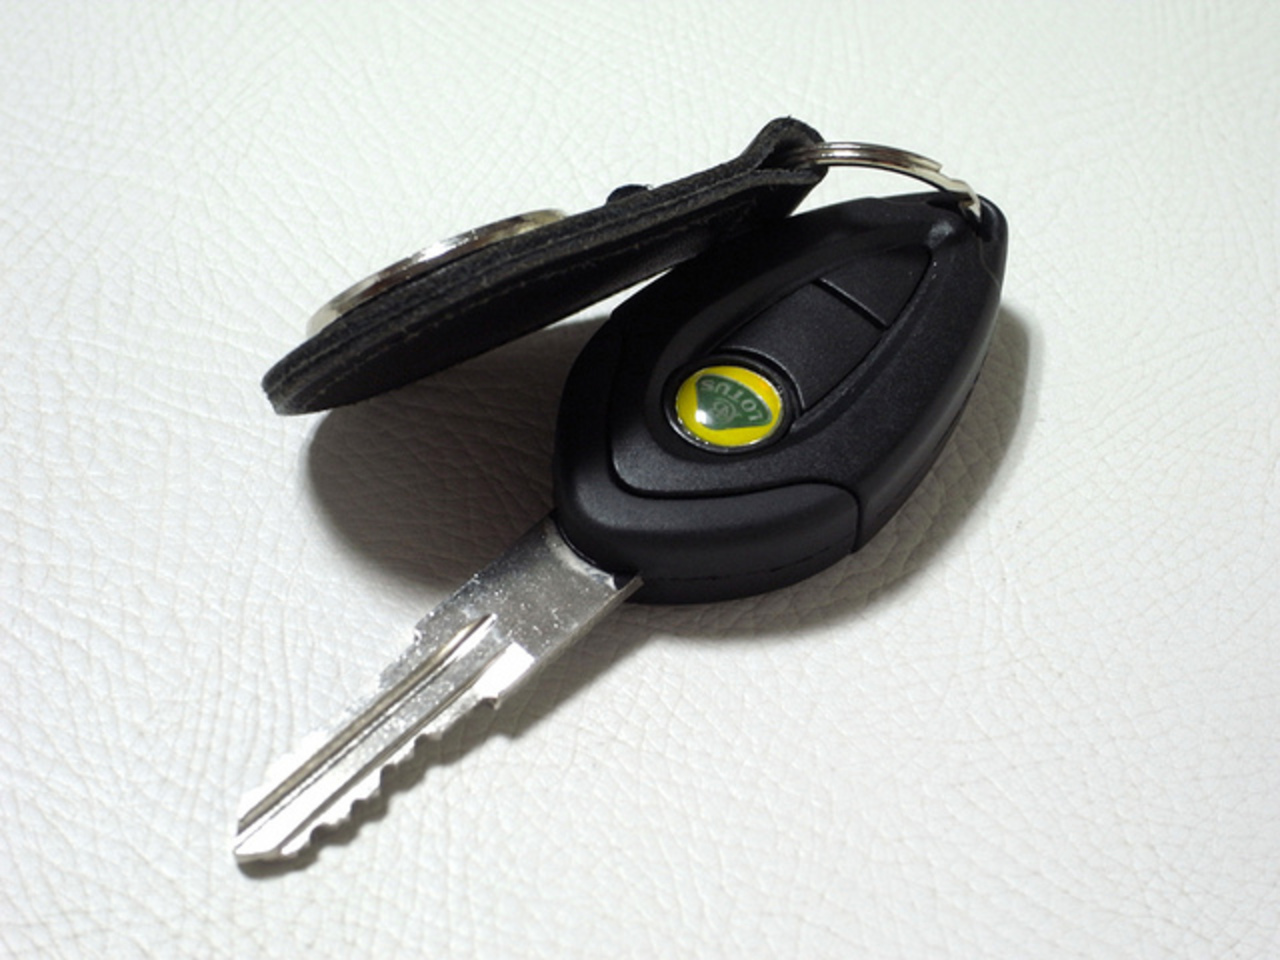 Lotus Elise S Ignition key | Flickr - Photo Sharing!